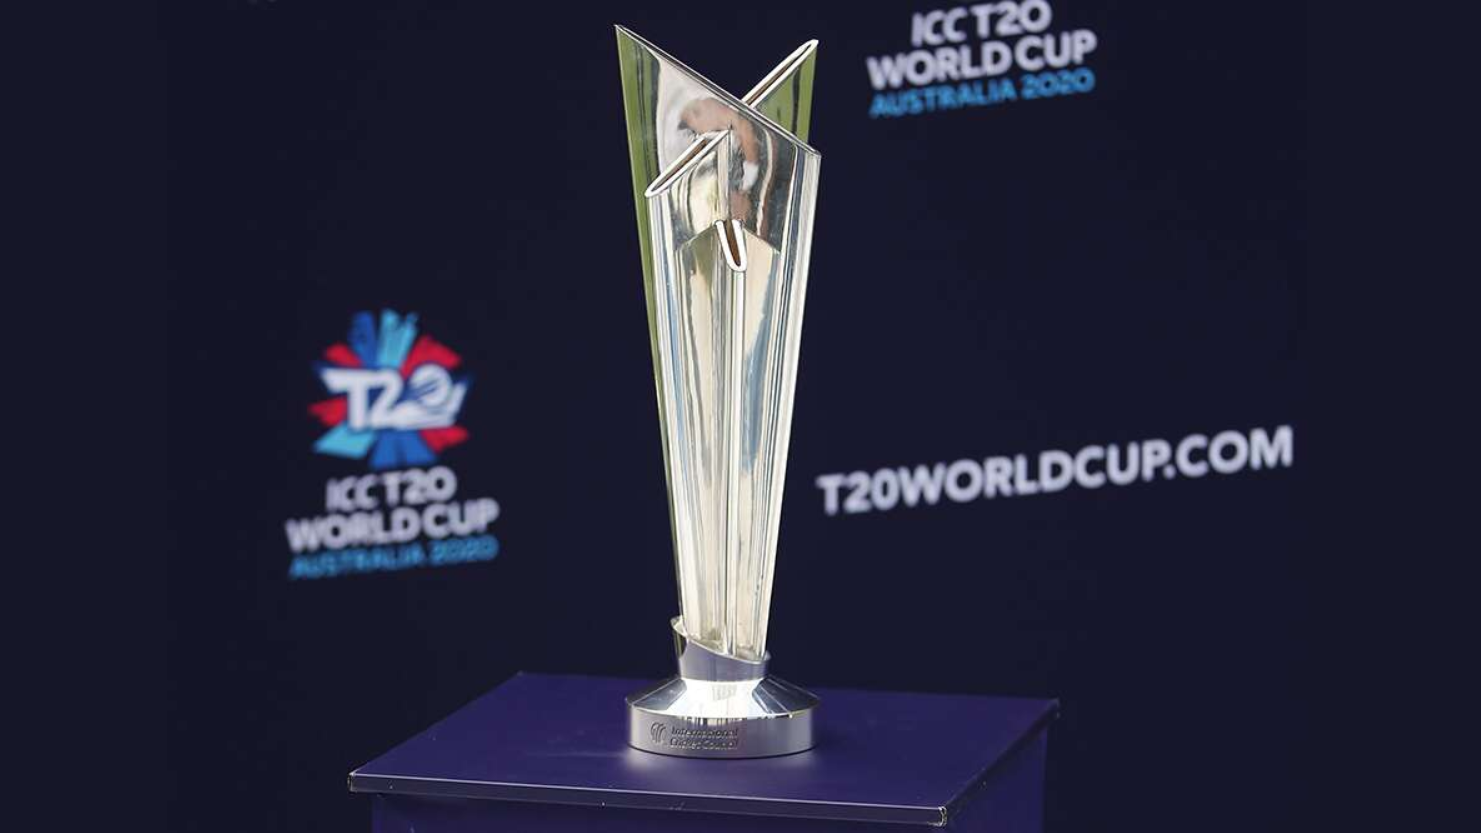 टी-20 विश्वकप 2020 के आयोजन को लेकर अगस्त में बड़ा फैसला लेगी आईसीसी 